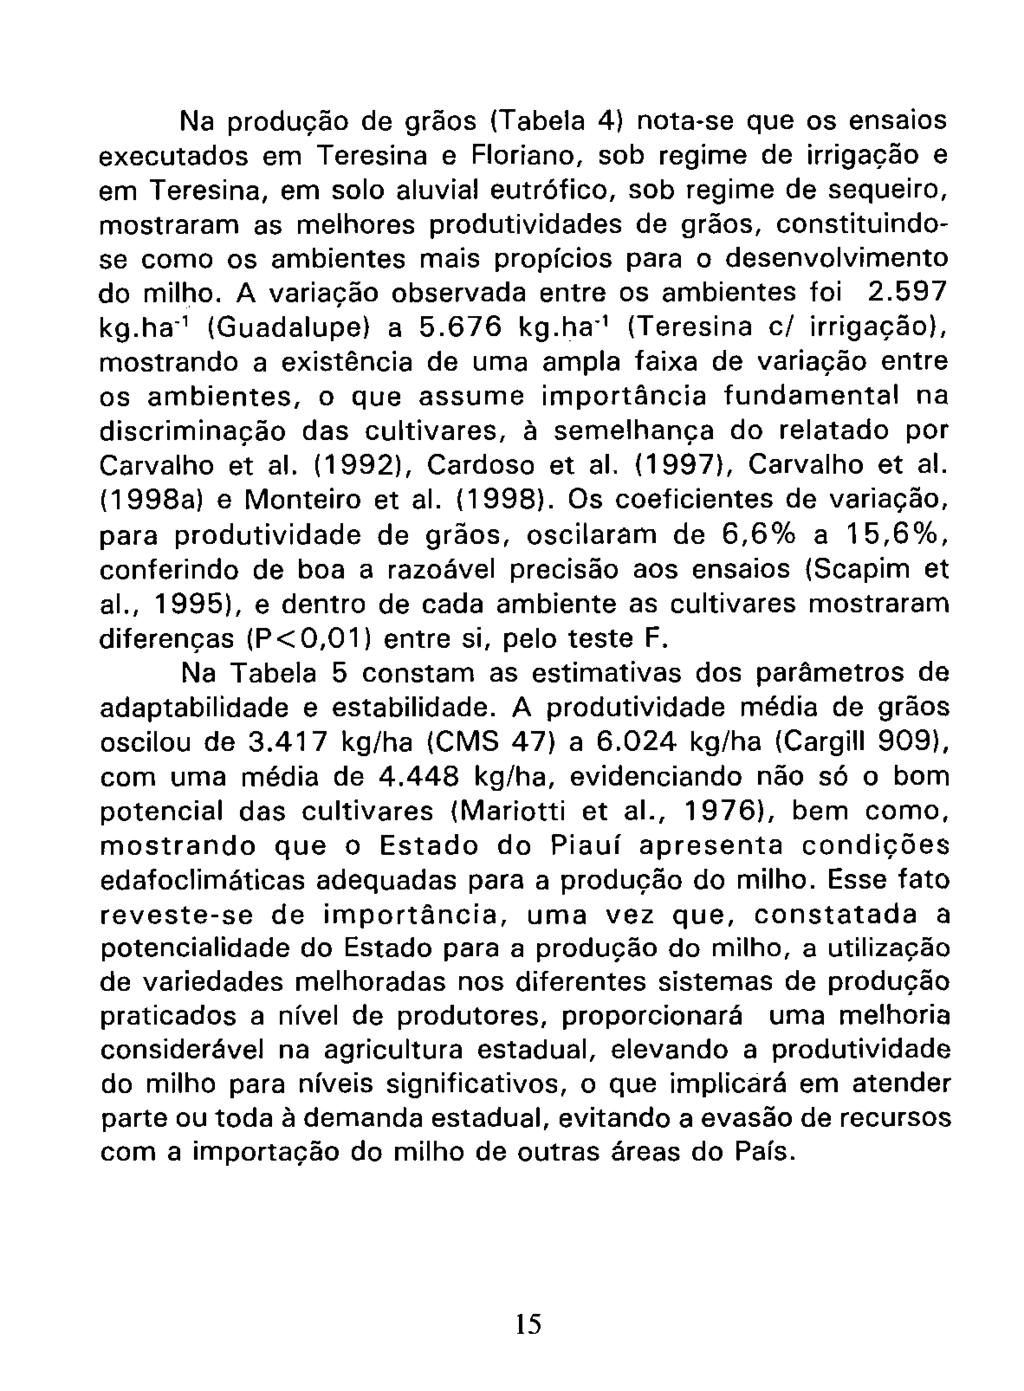 Na producão de grãos (Tabela 4) nota-se que os ensaios executados em Teresina e Floriano, sob regime de irrigacão e em Teresina, em solo aluvial eutrófico, sob regime de sequeiro, mostraram as